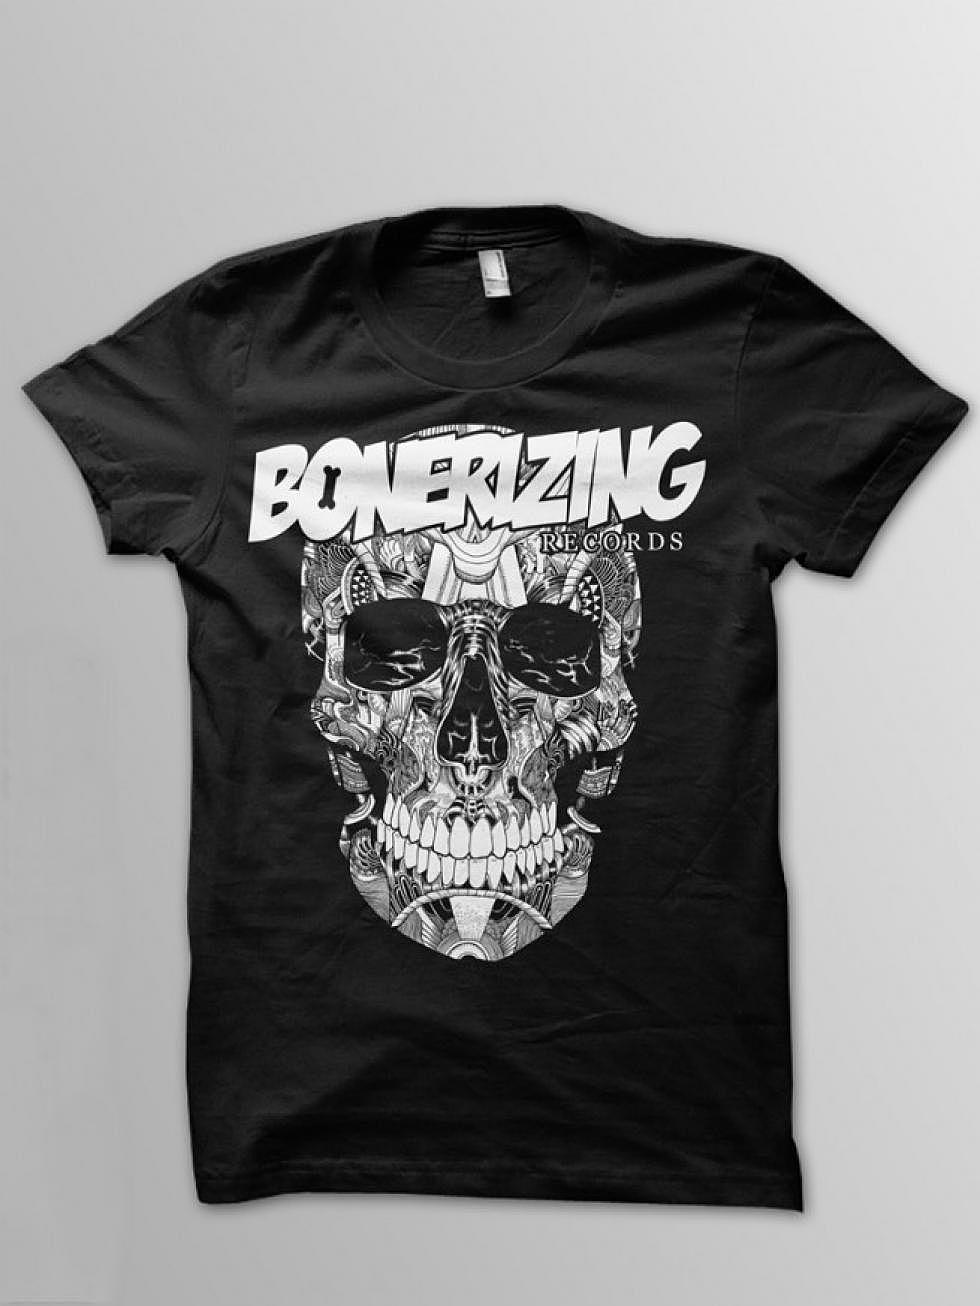 Bonerizing Records T-Shirt